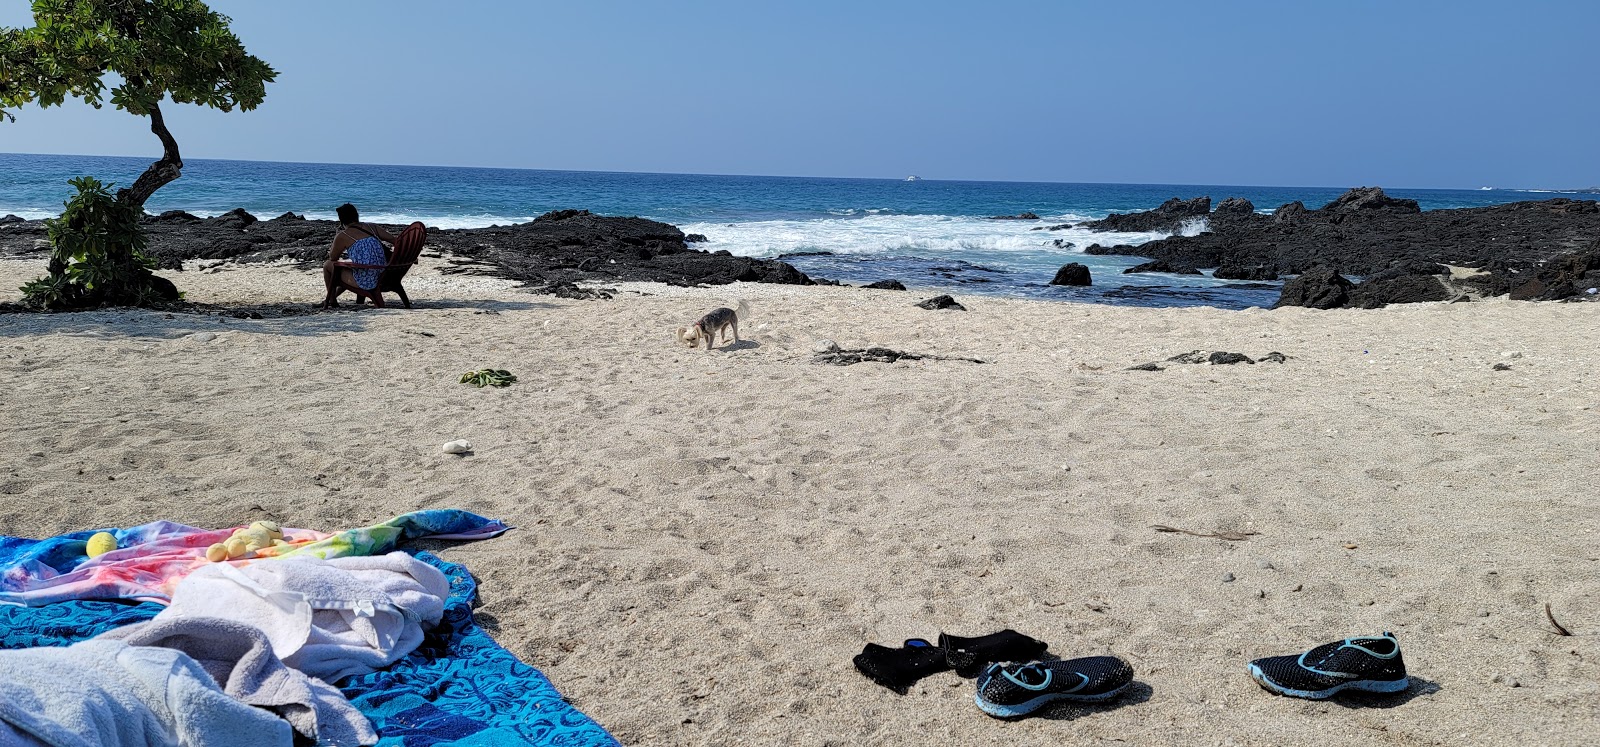 Fotografija O'oma Beach nahaja se v naravnem okolju